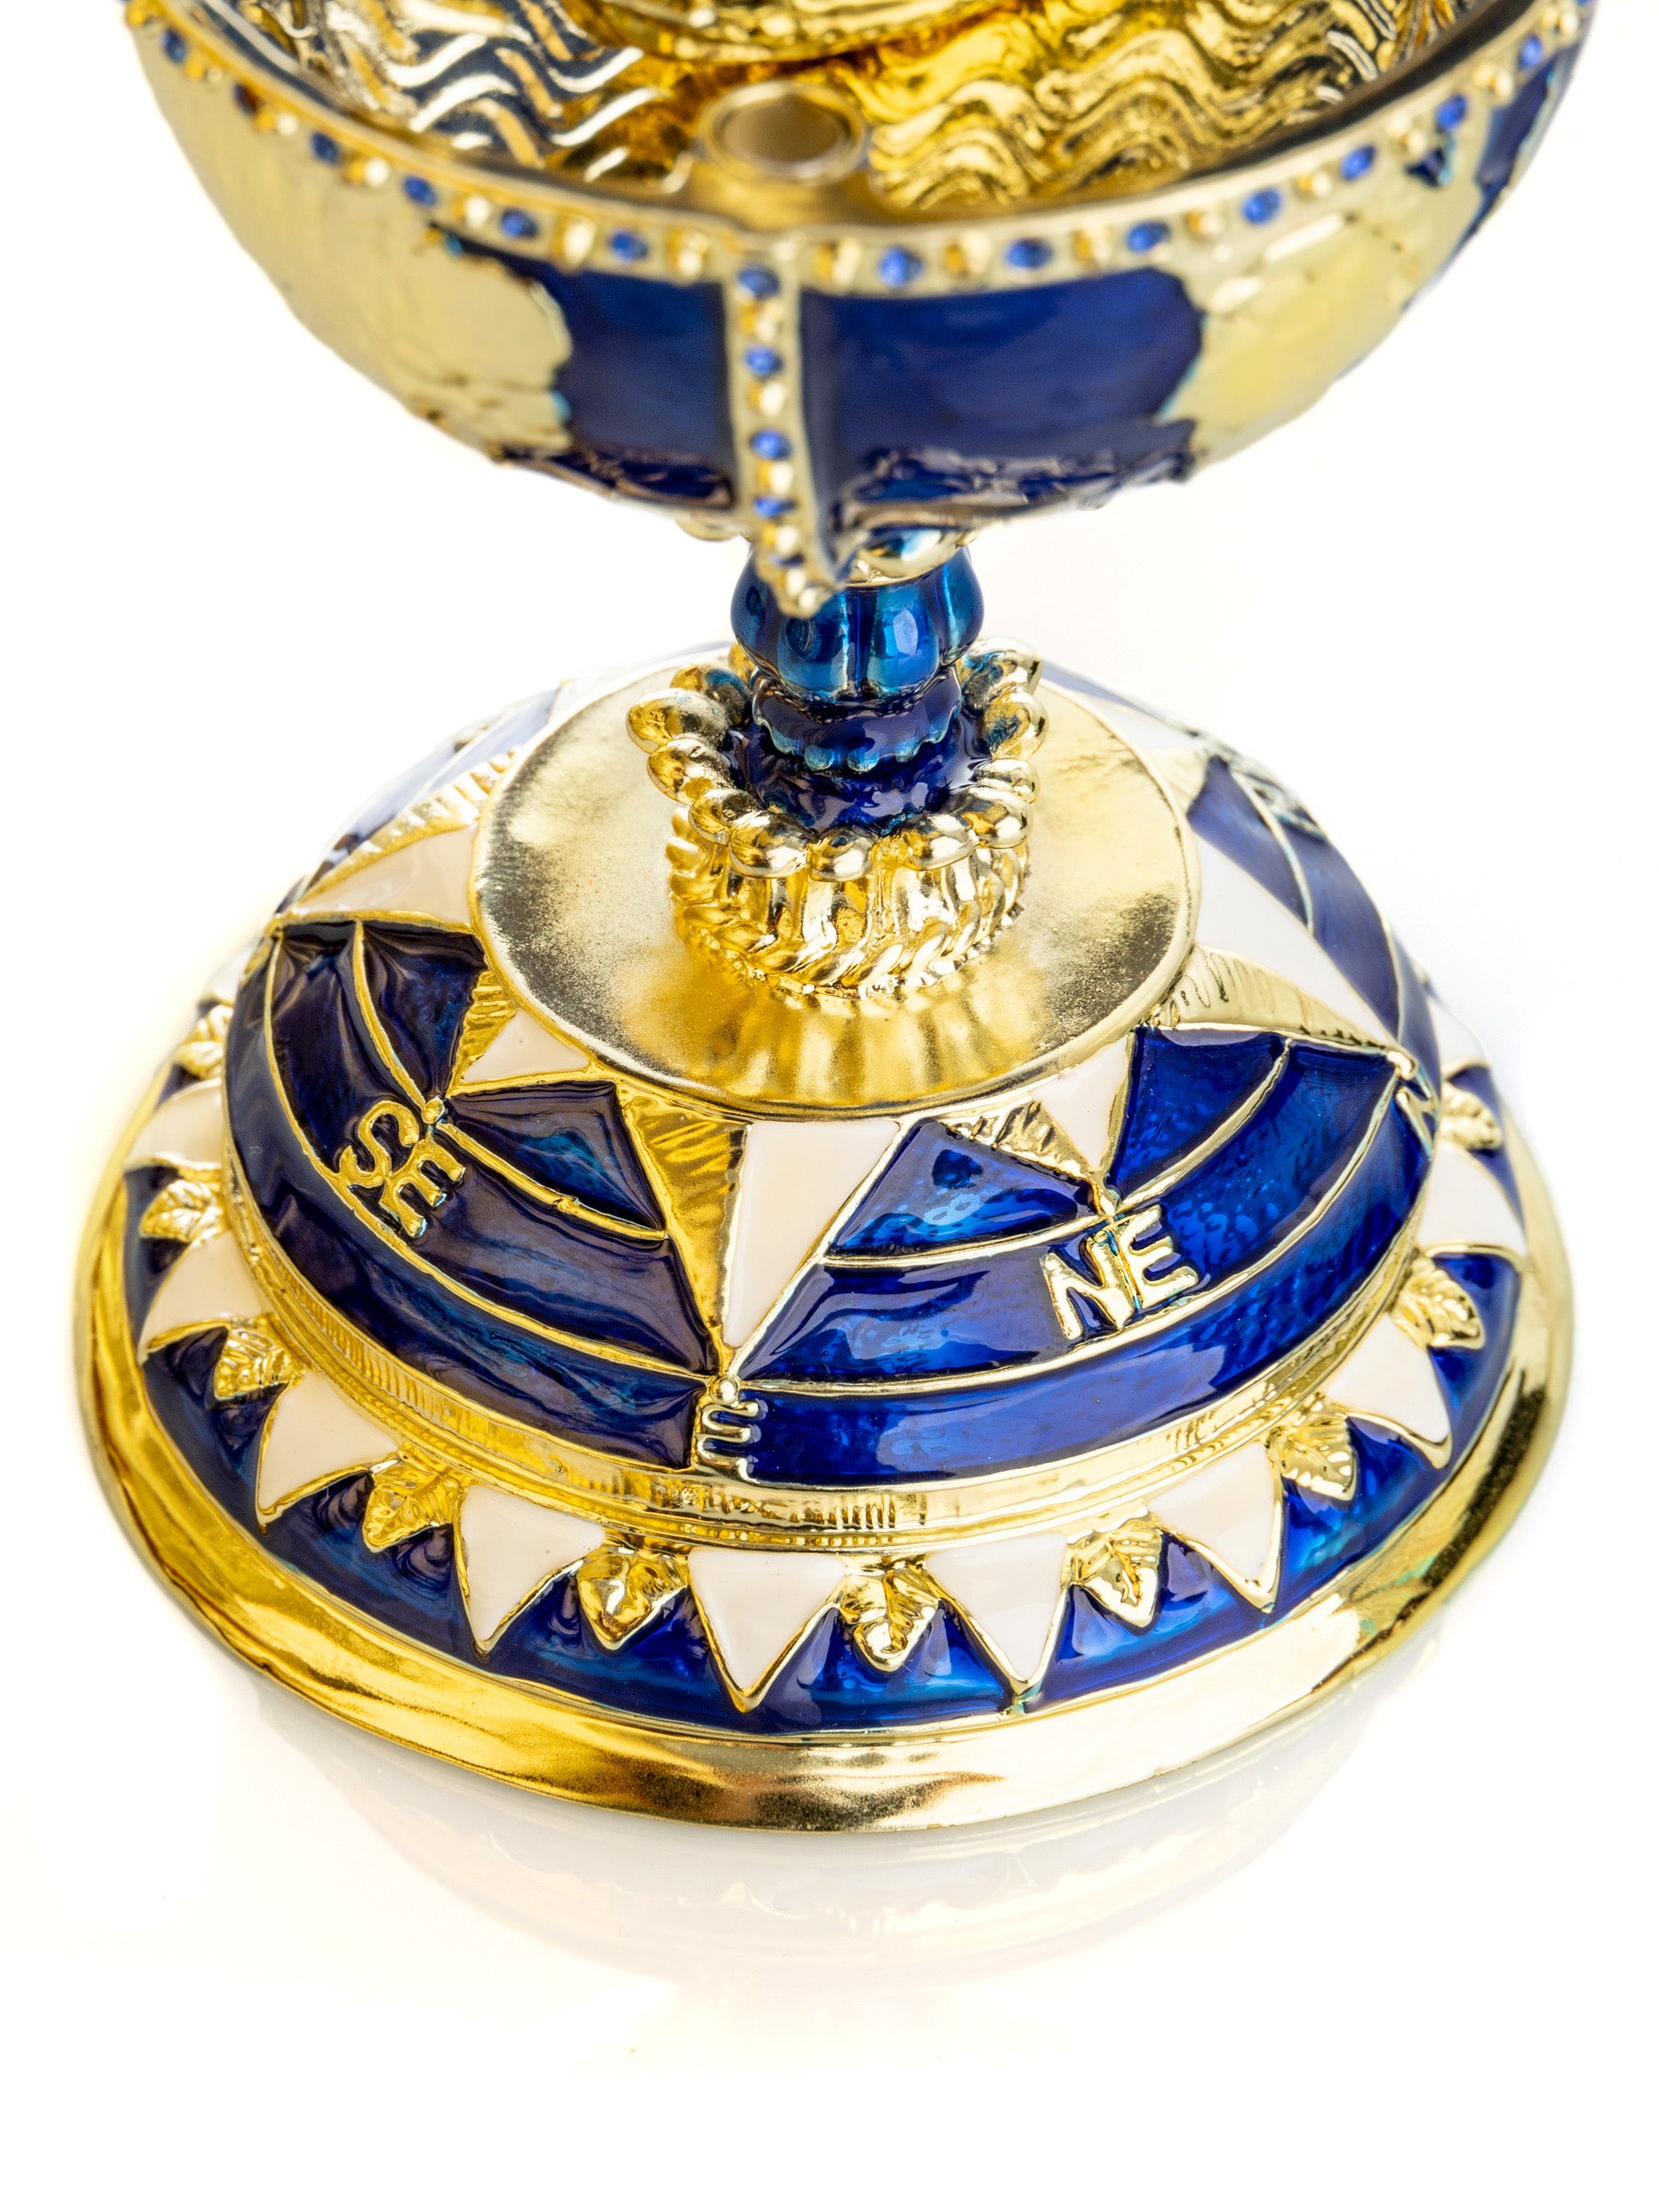 Globus Fabergé-Ei mit Segelschiff